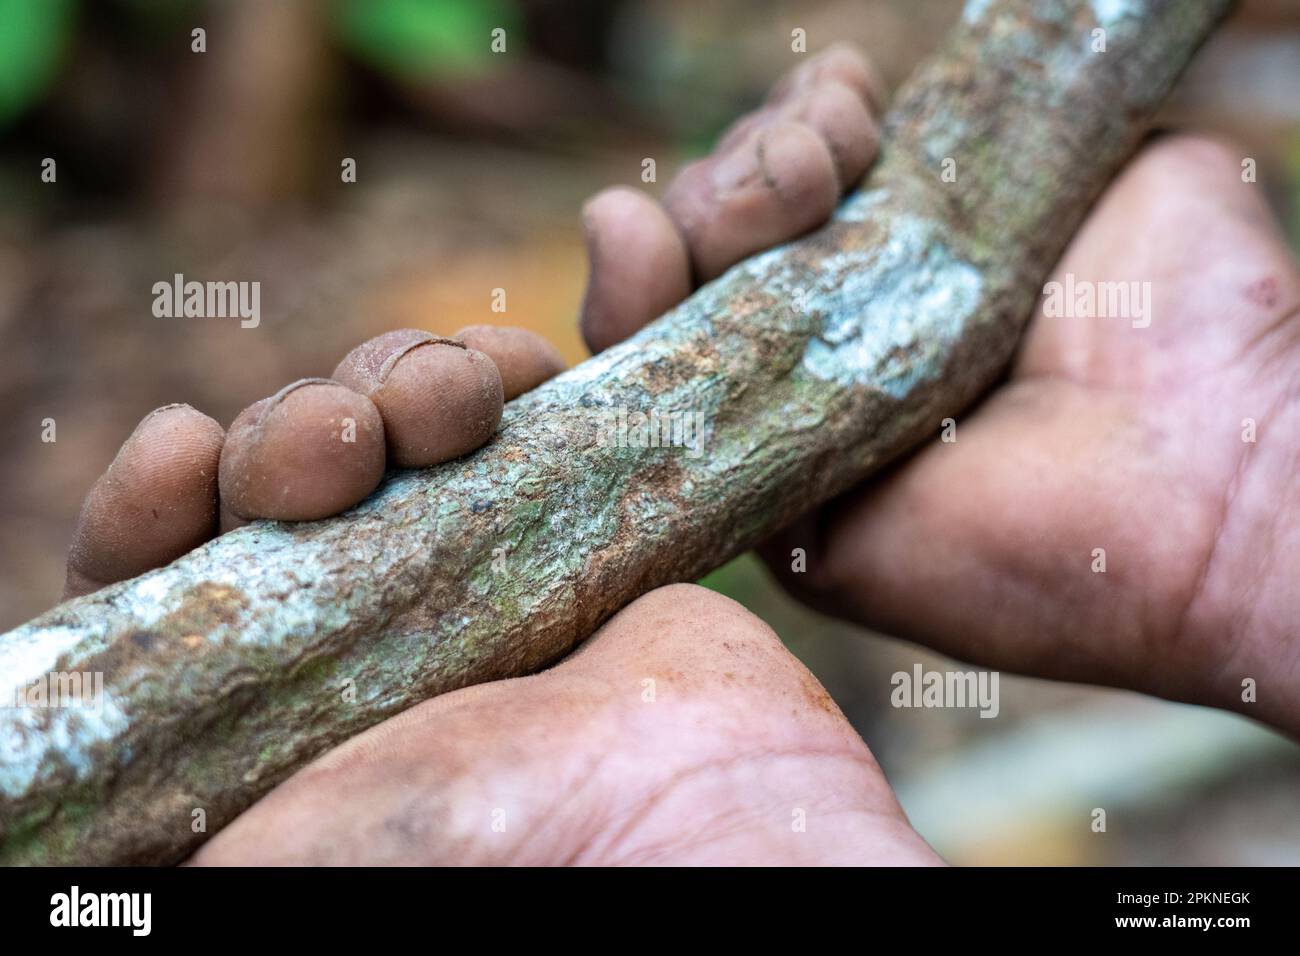 L'écorce d'ayahuasca et les feuilles (Banisteriopsis caapi) sont déstructurées bouillies et distillées pour une utilisation dans la pratique sacrée et rituelle dans le bassin de l'Amazone Banque D'Images